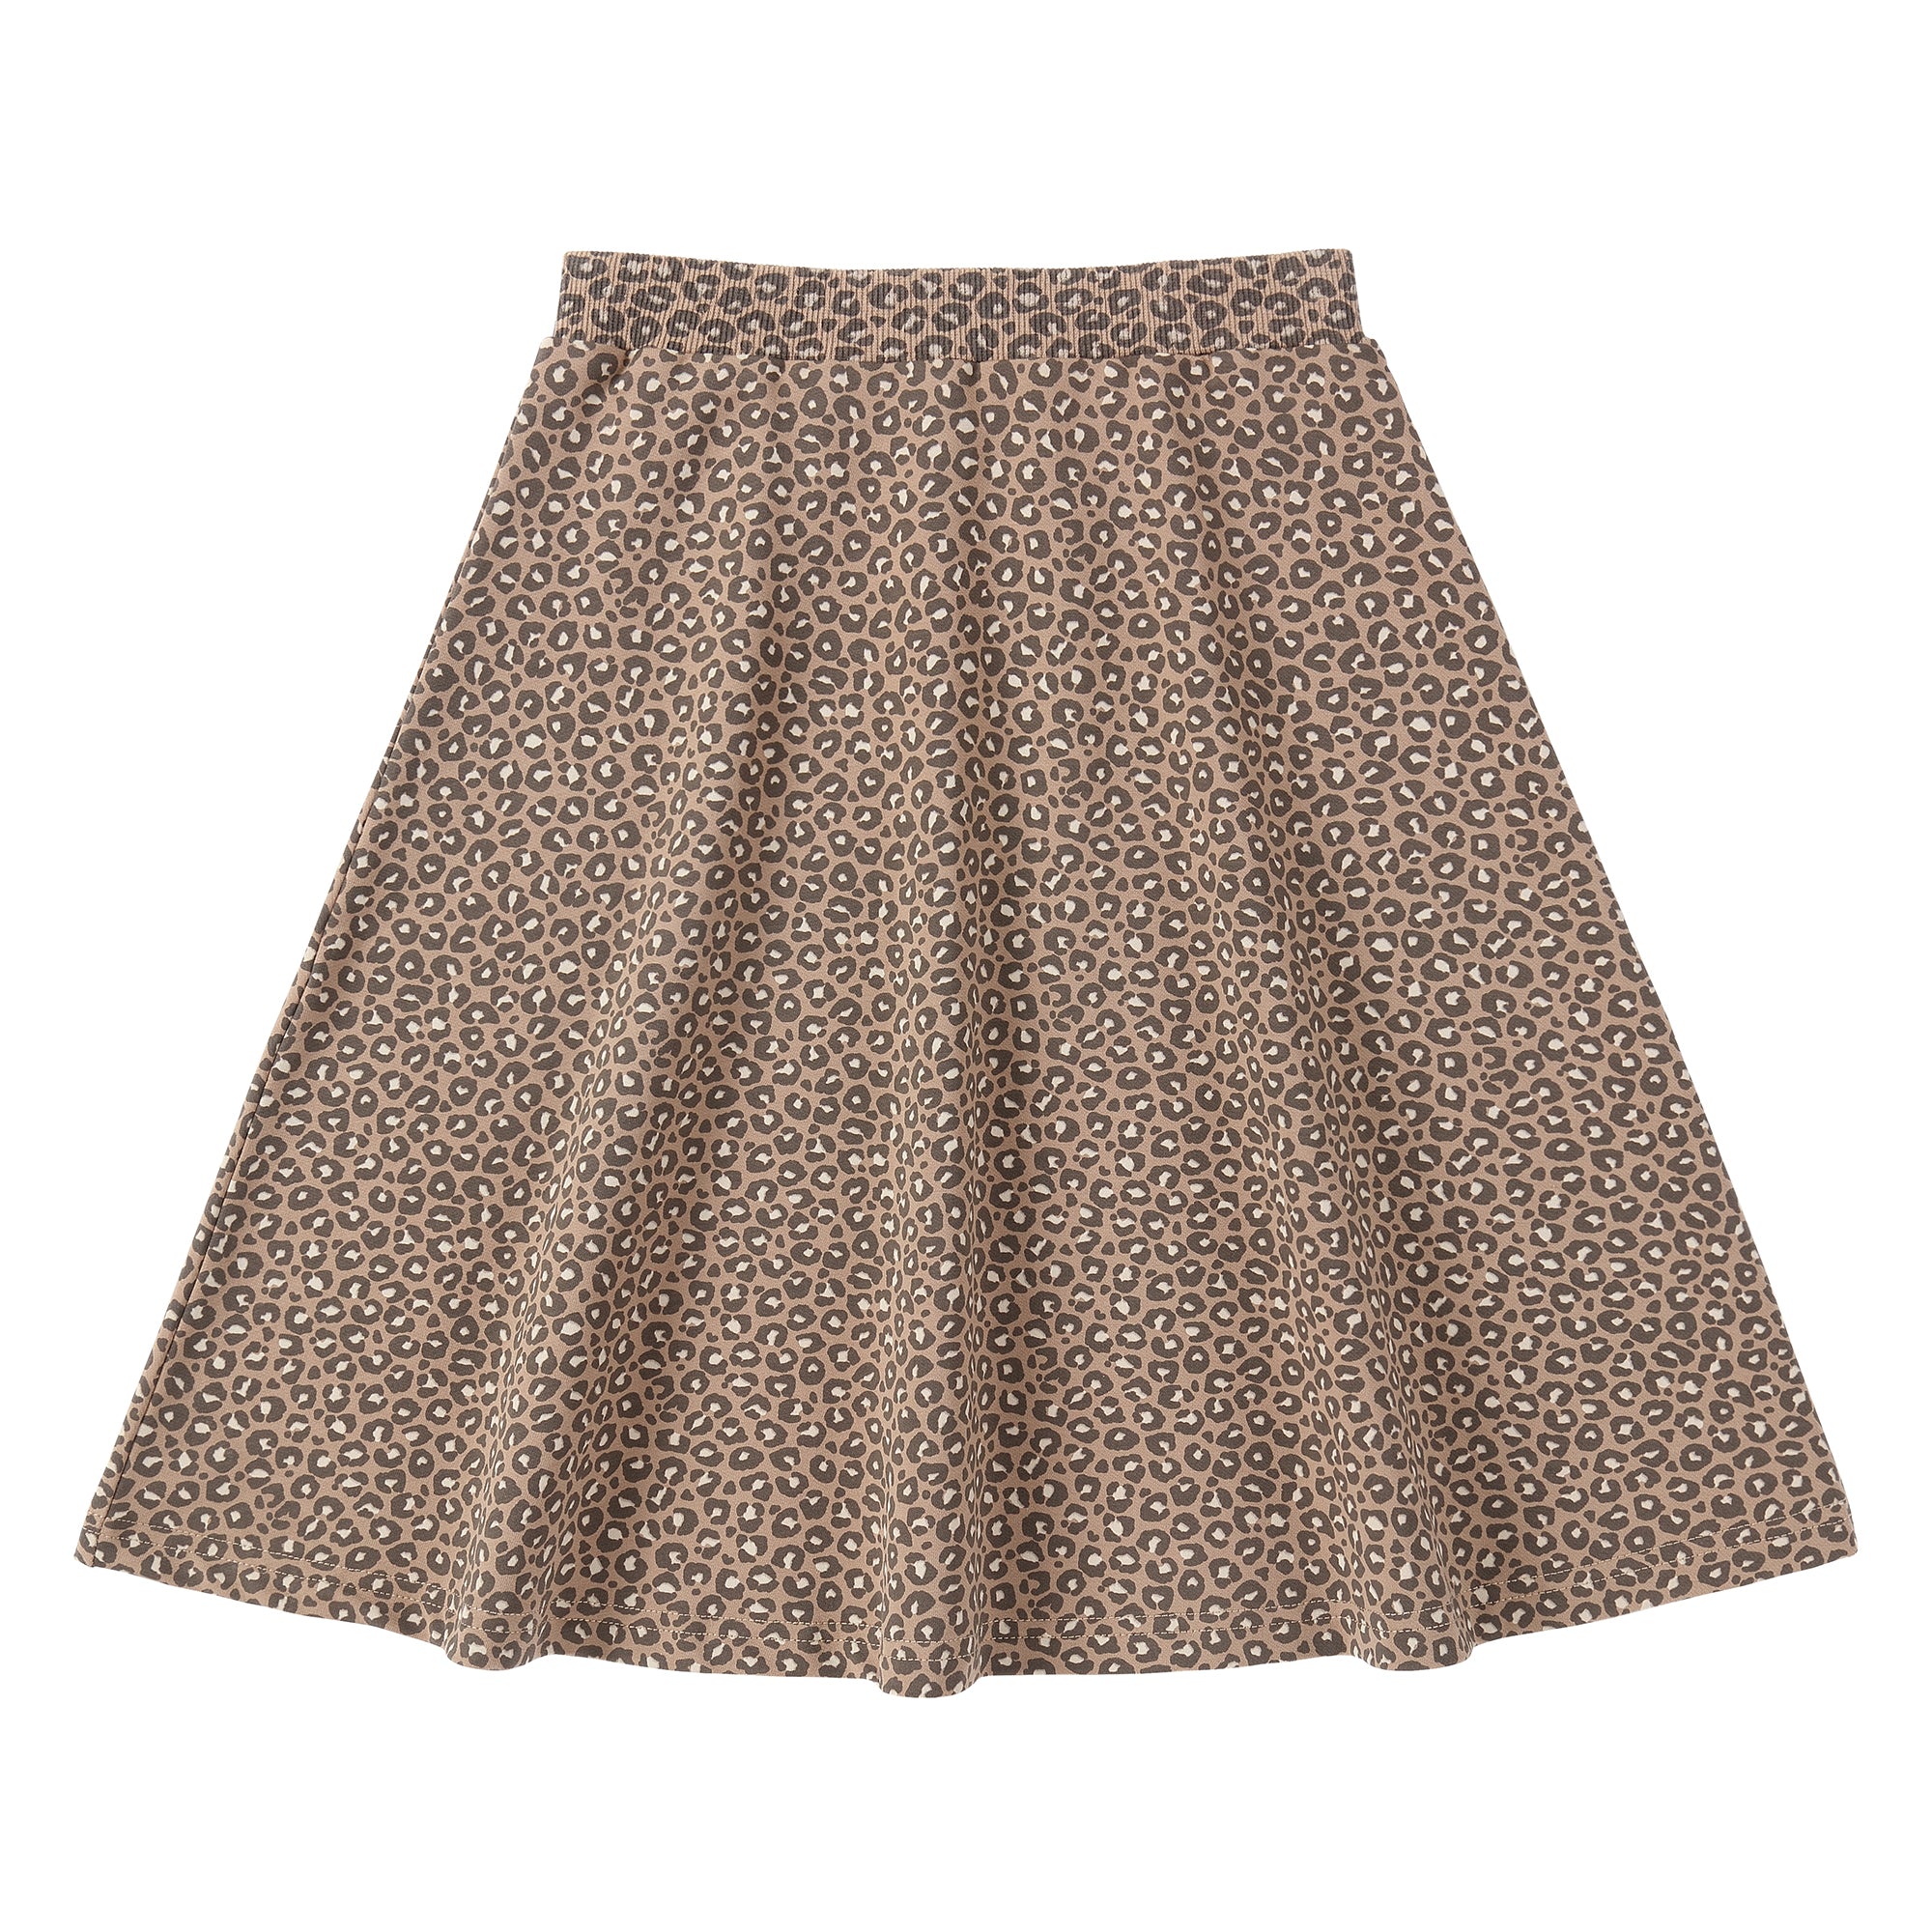 Cheetah Print A-Line Skirt